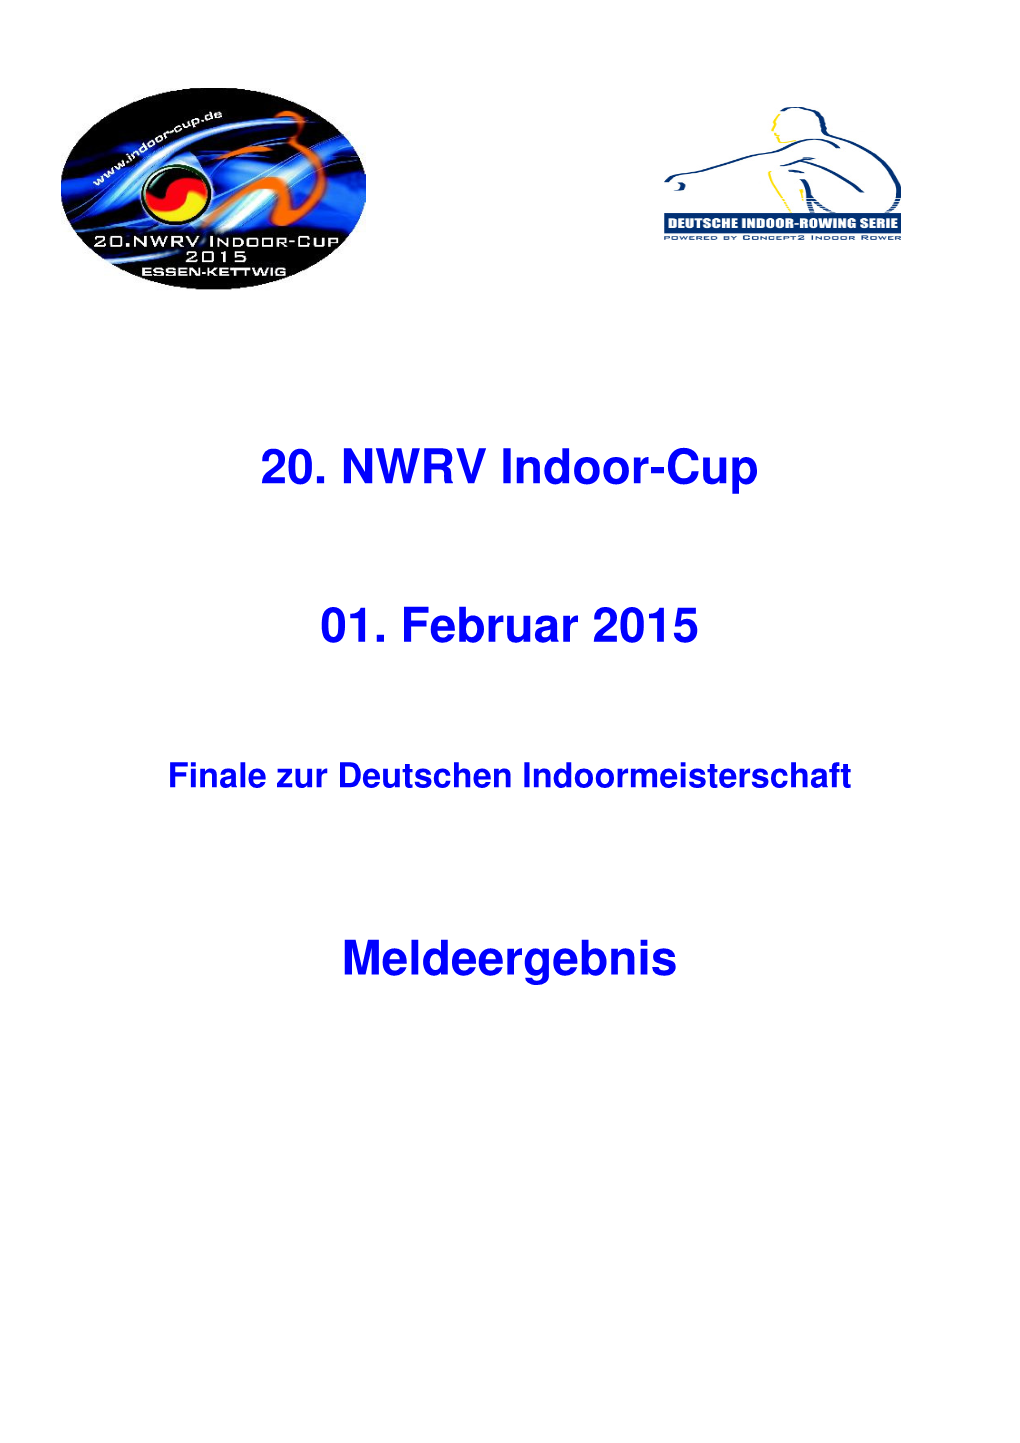 20. NWRV Indoor-Cup 01. Februar 2015 Meldeergebnis